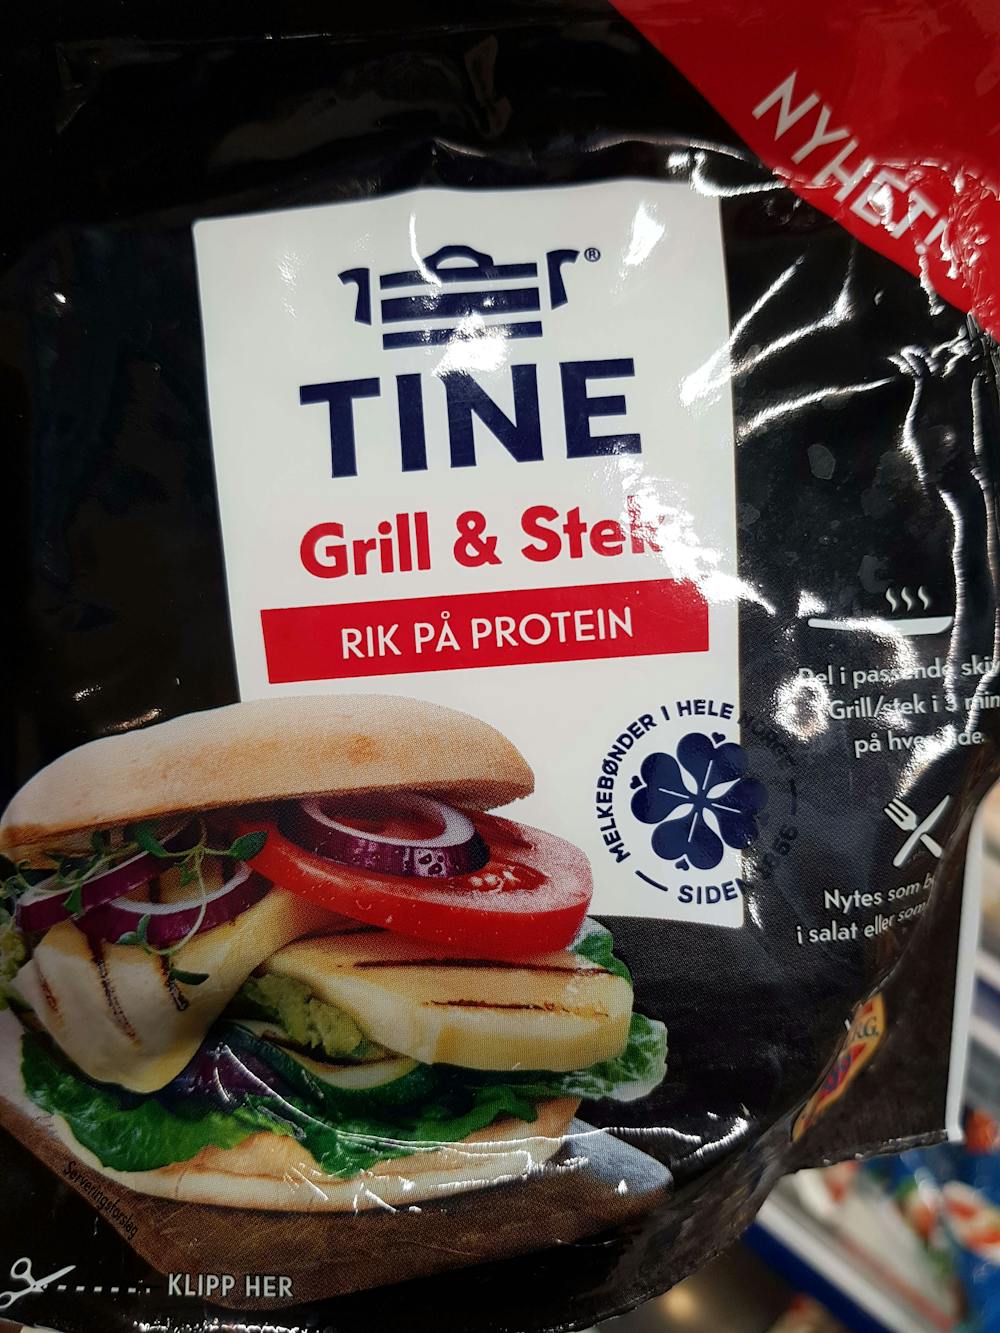 Grill & stek, Tine